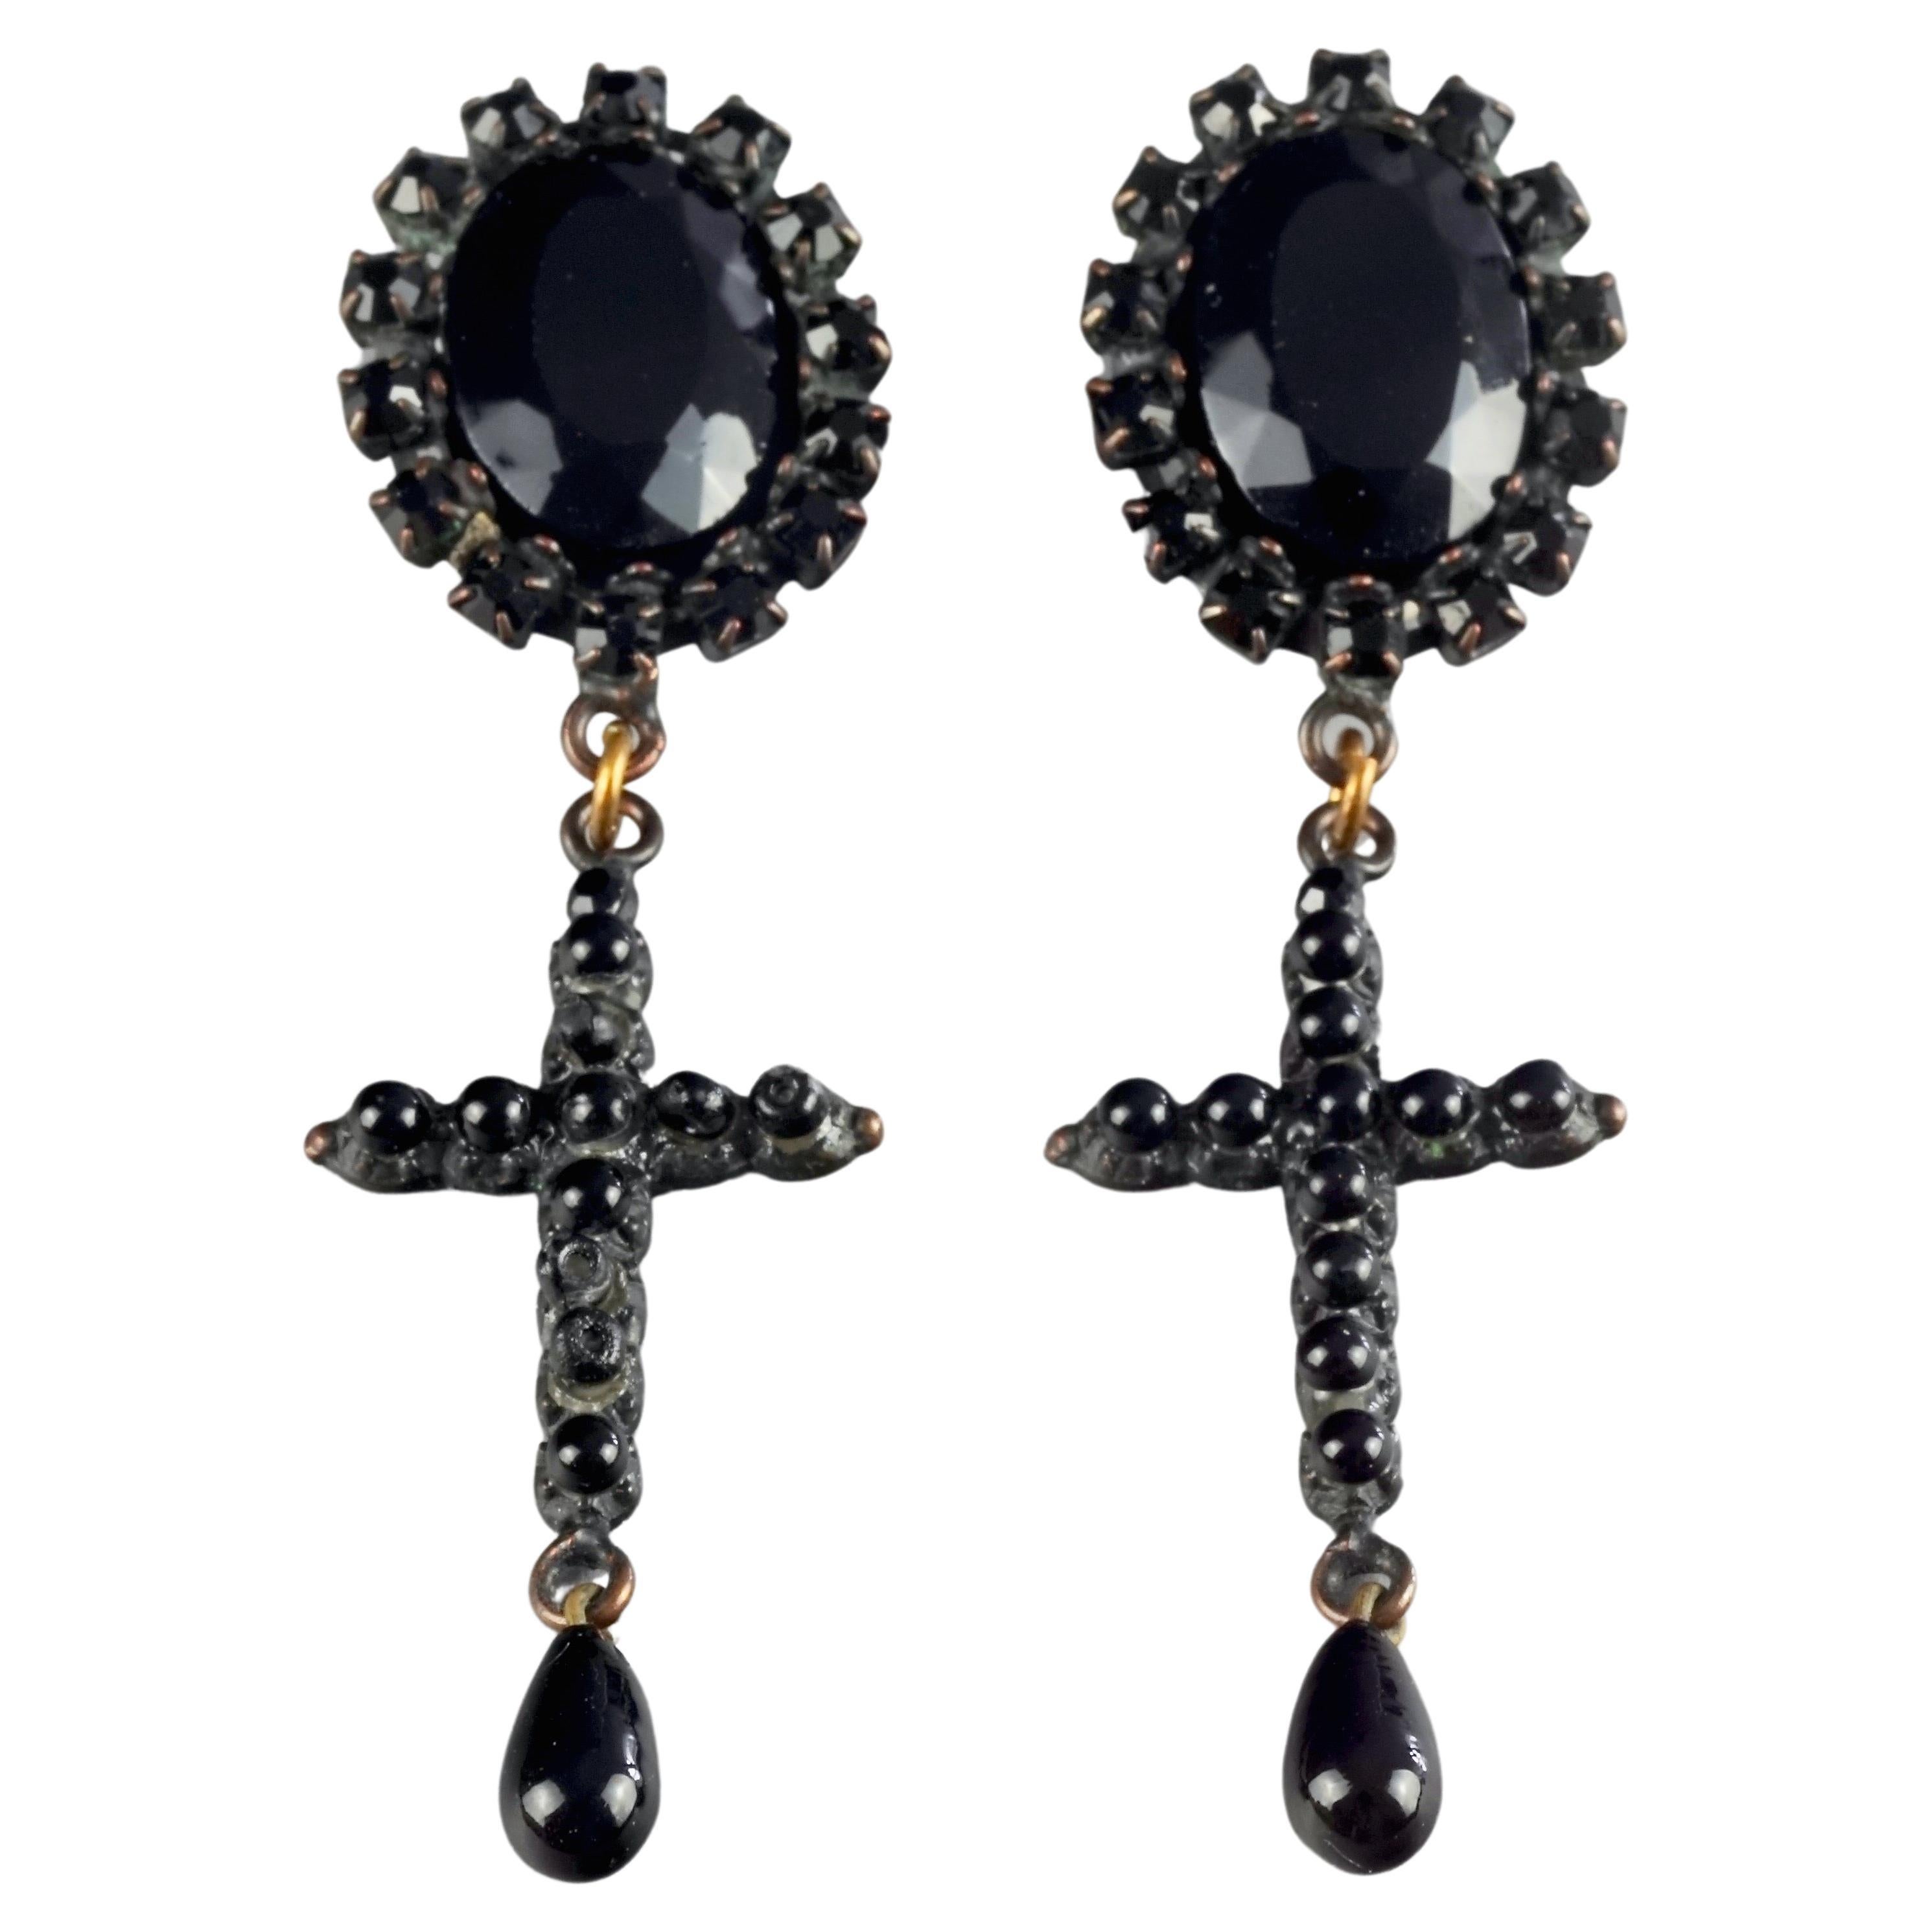 Vintage JEAN PAUL GAULTIER Gothic Black Cross Dangling Earrings For Sale